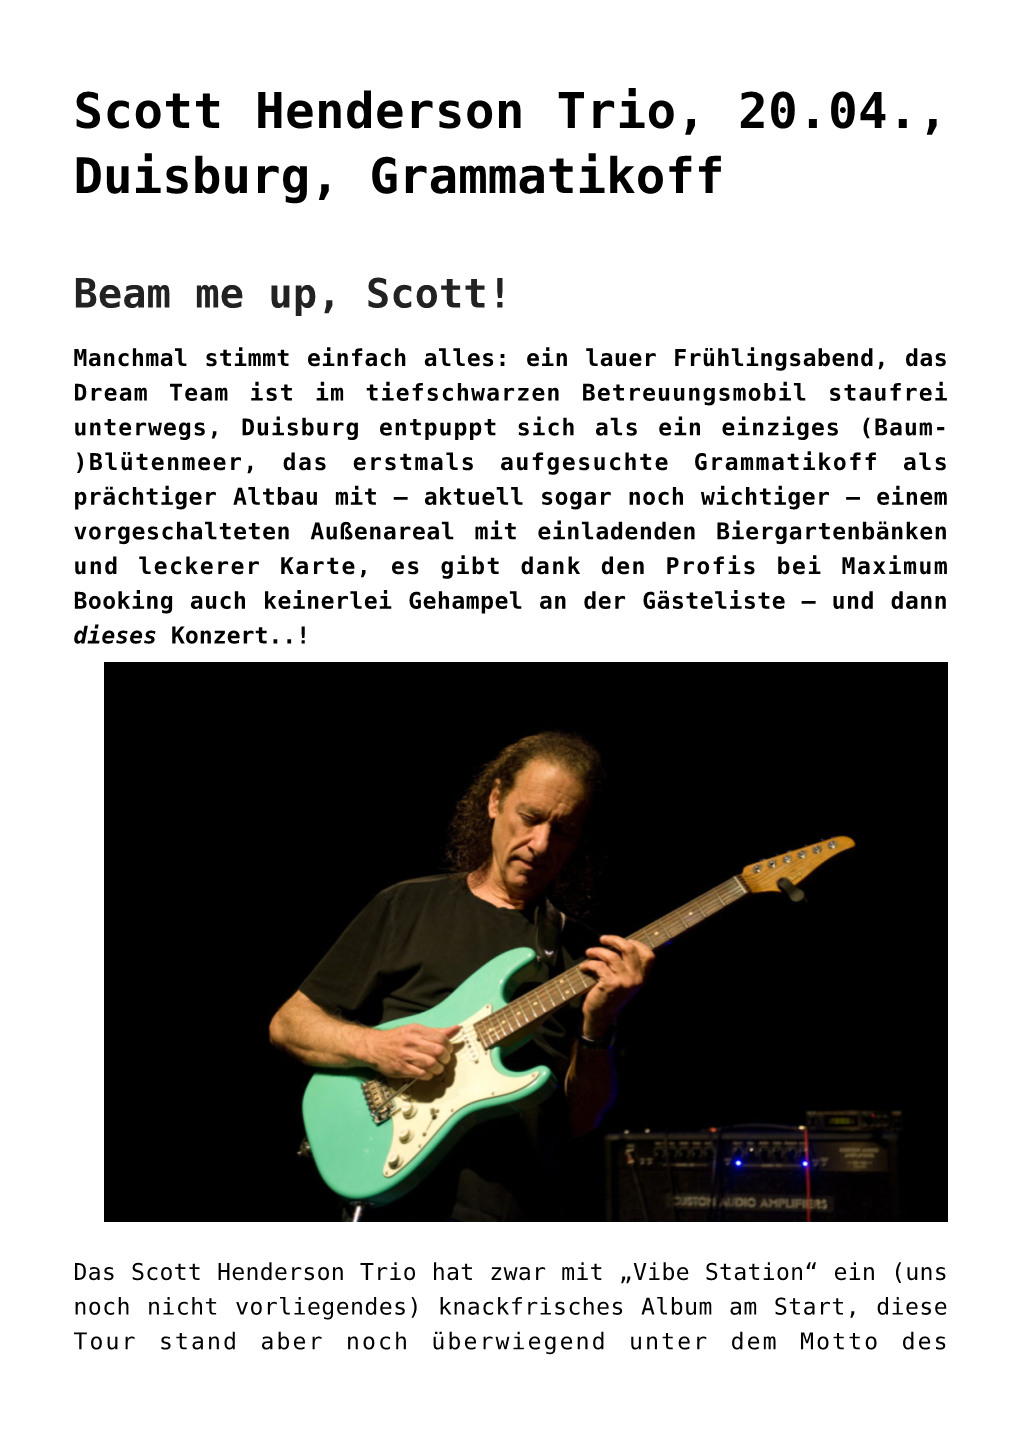 Scott Henderson Trio, 20.04., Duisburg, Grammatikoff